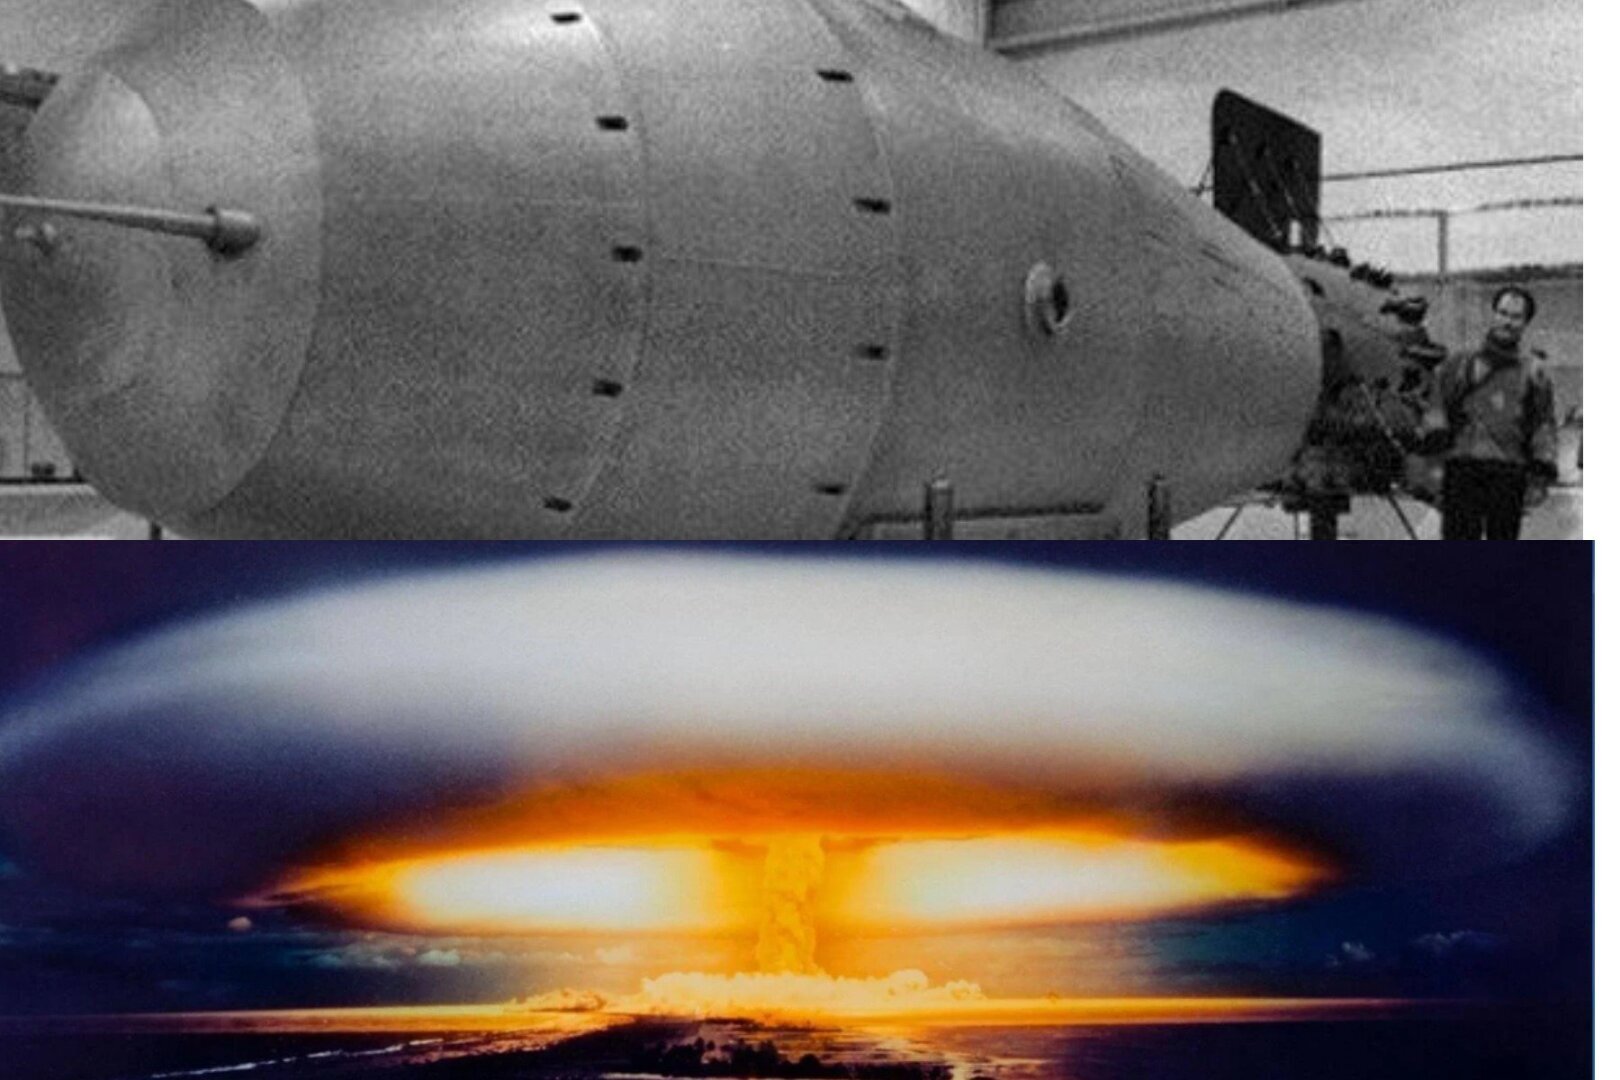 Царь-бомба (ан602) – 58 мегатонн